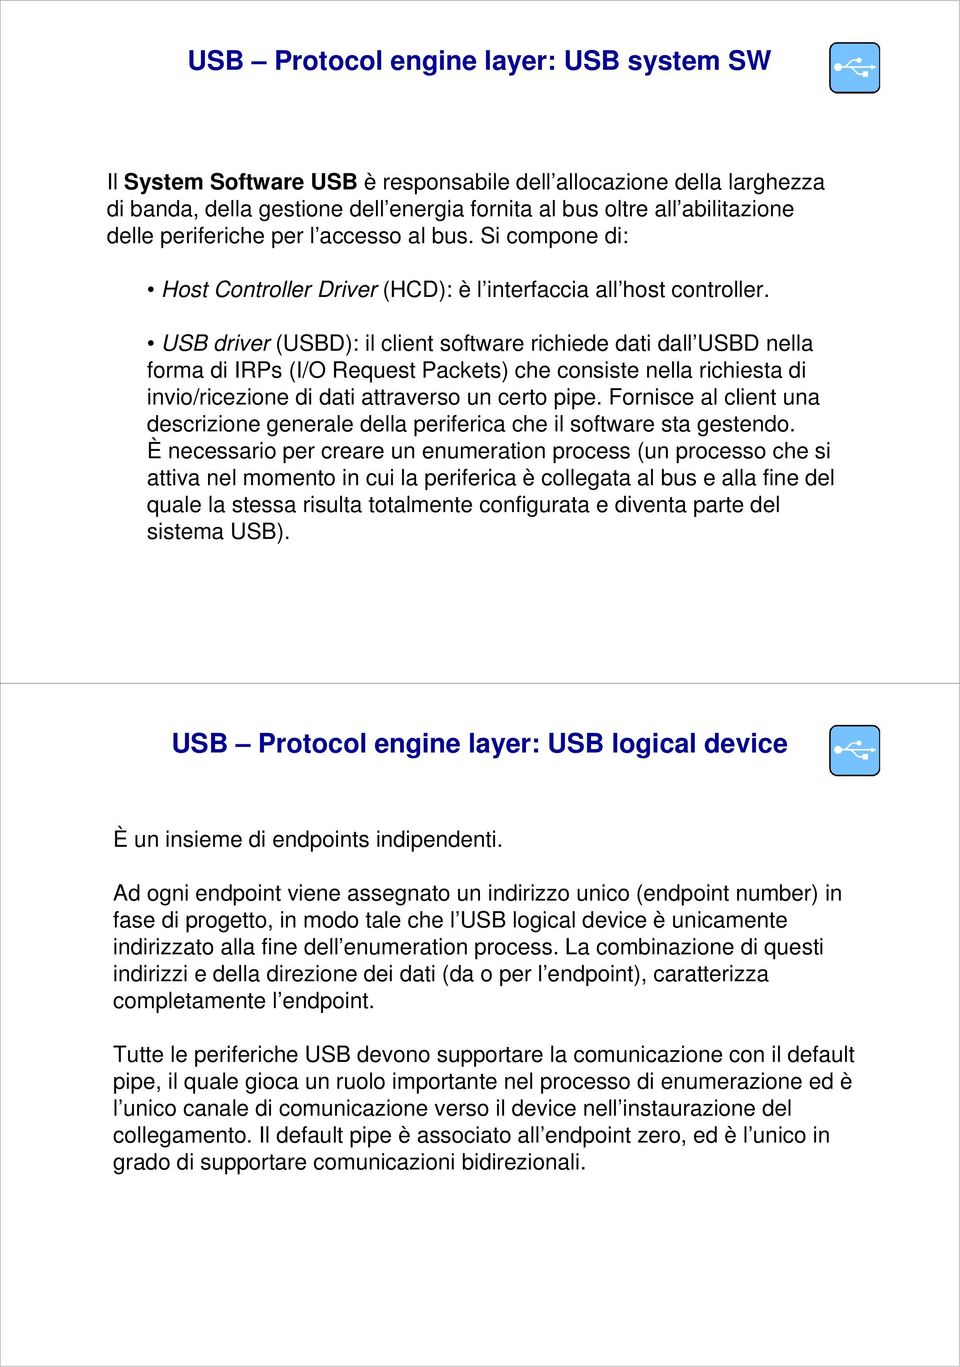 USB driver (USBD): il client software richiede dati dall USBD nella forma di IRPs (I/O Request Packets) che consiste nella richiesta di invio/ricezione di dati attraverso un certo pipe.